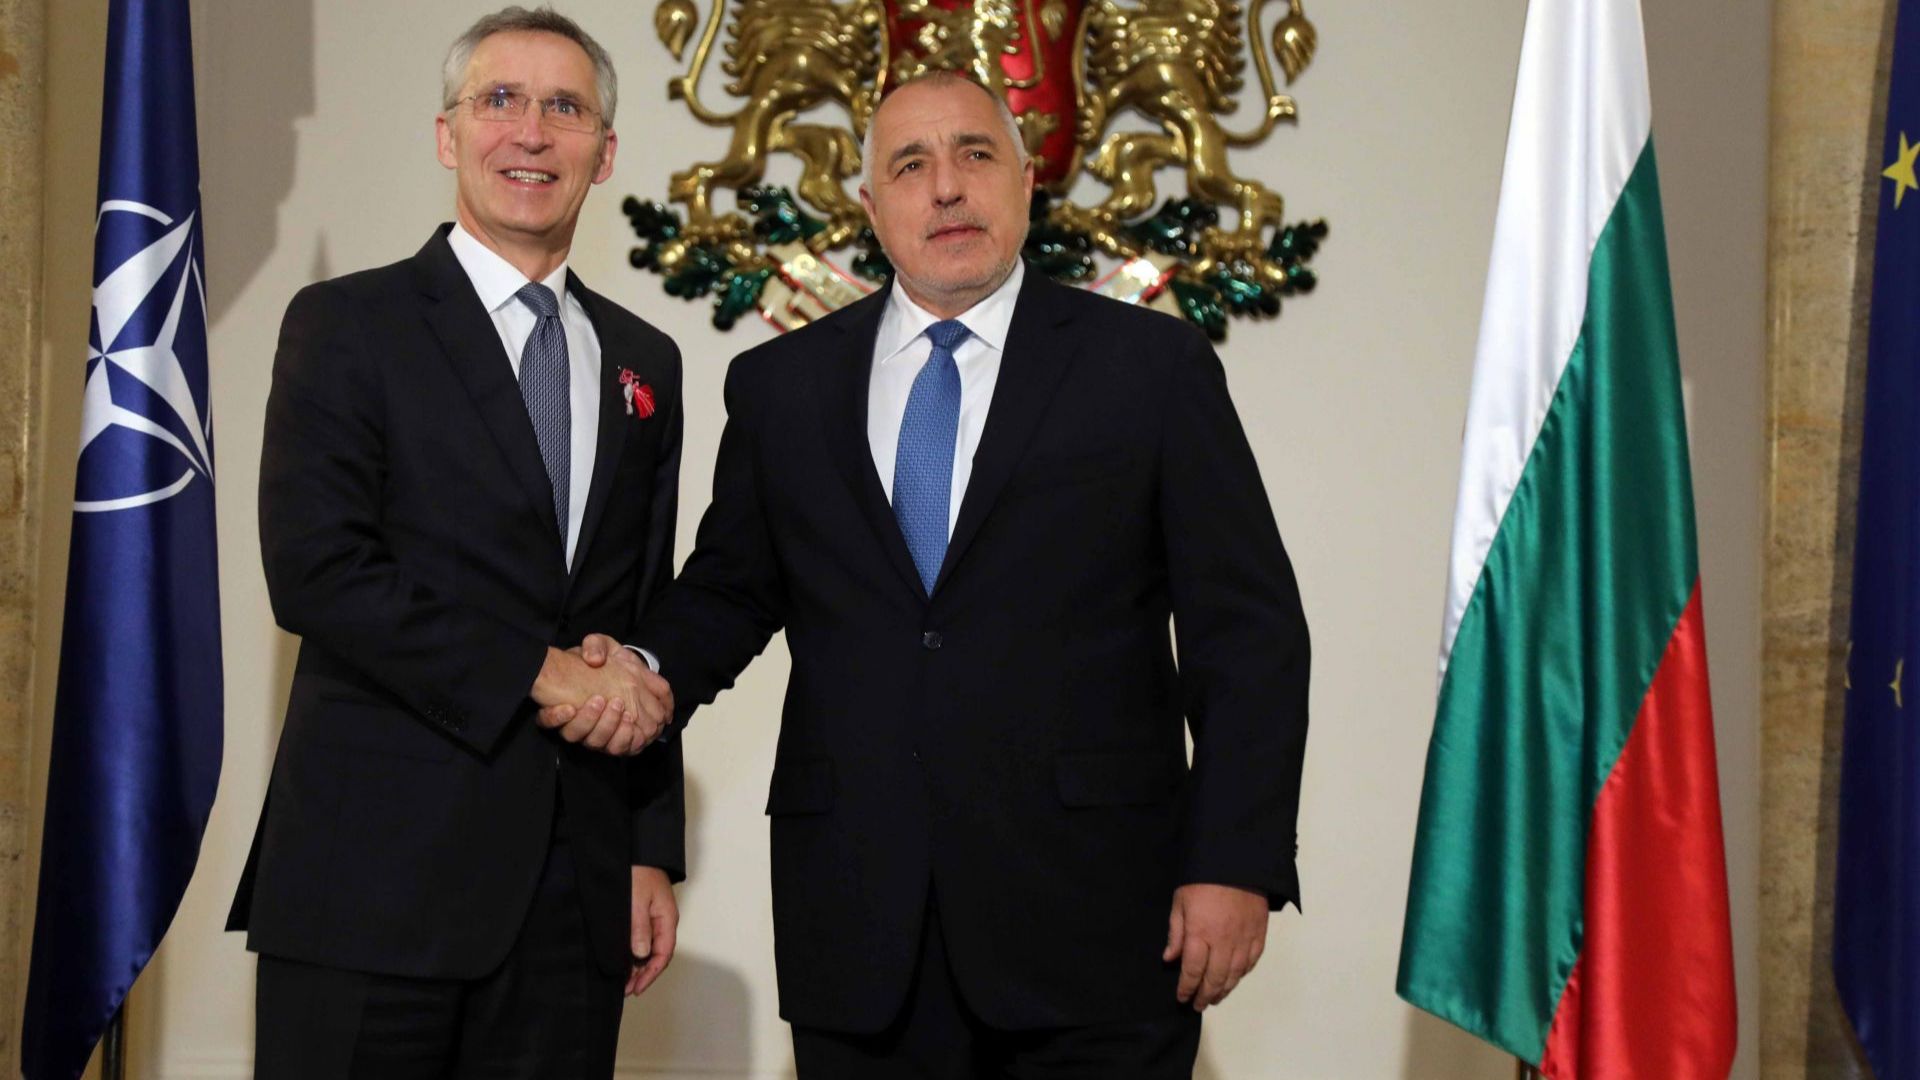 Започна срещата на четири очи между министър председателя Бойко Борисов и